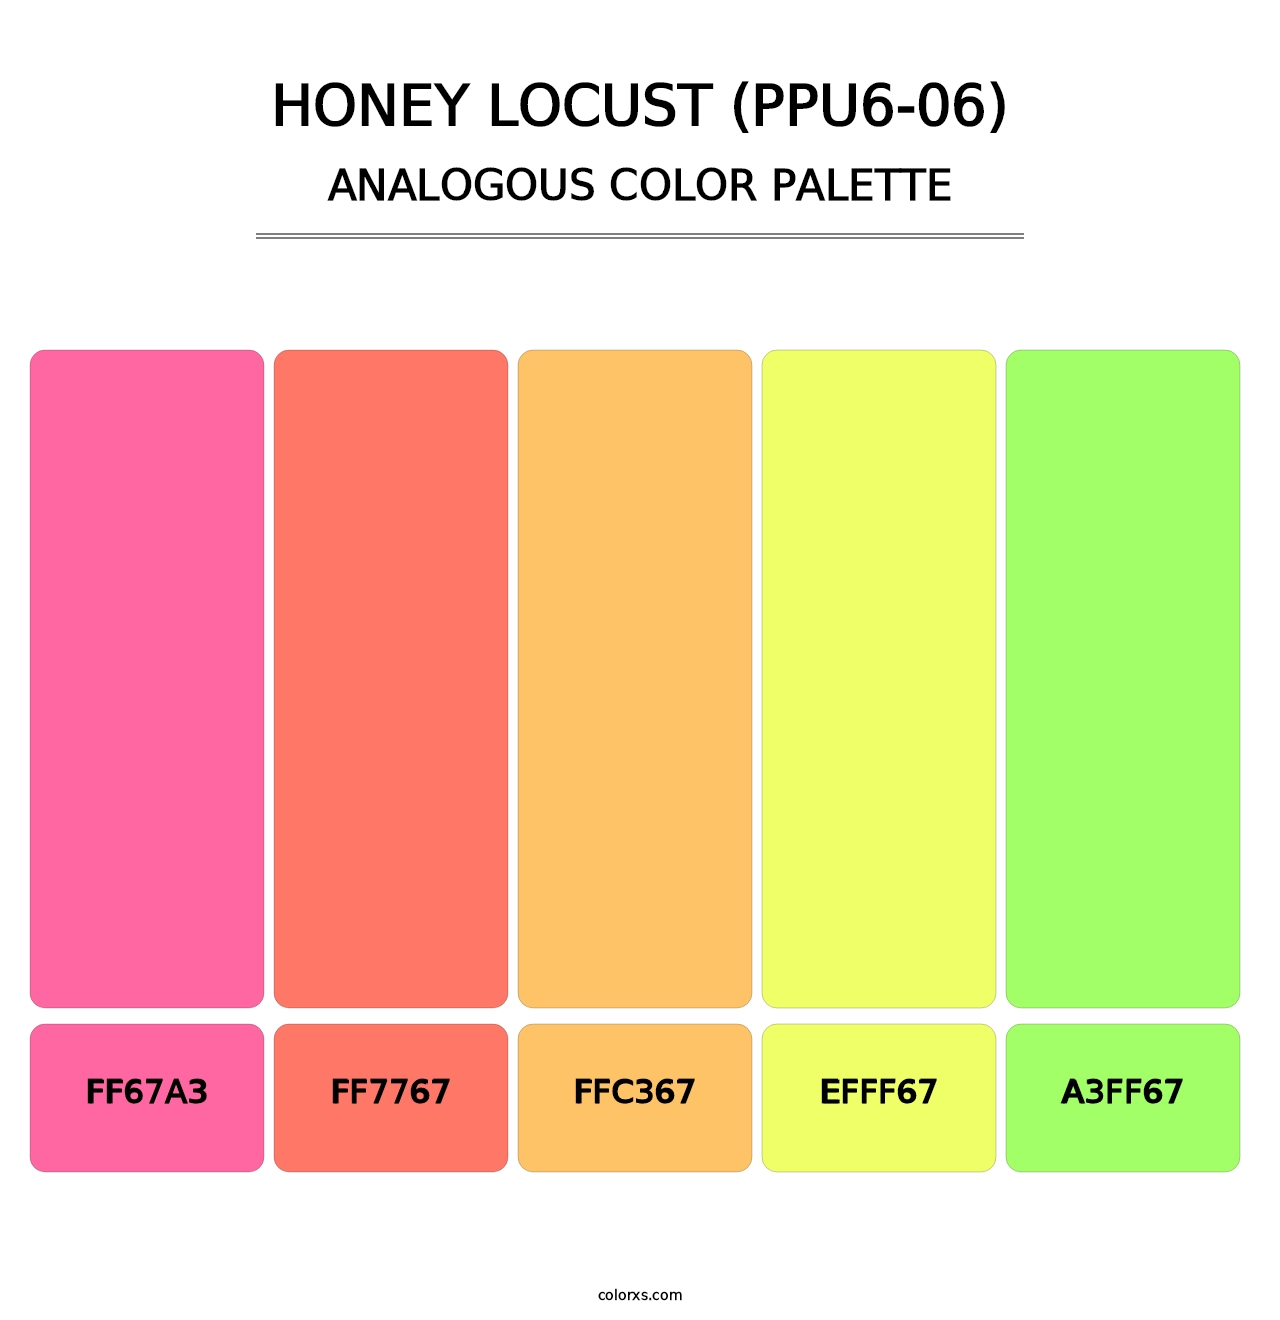 Honey Locust (PPU6-06) - Analogous Color Palette